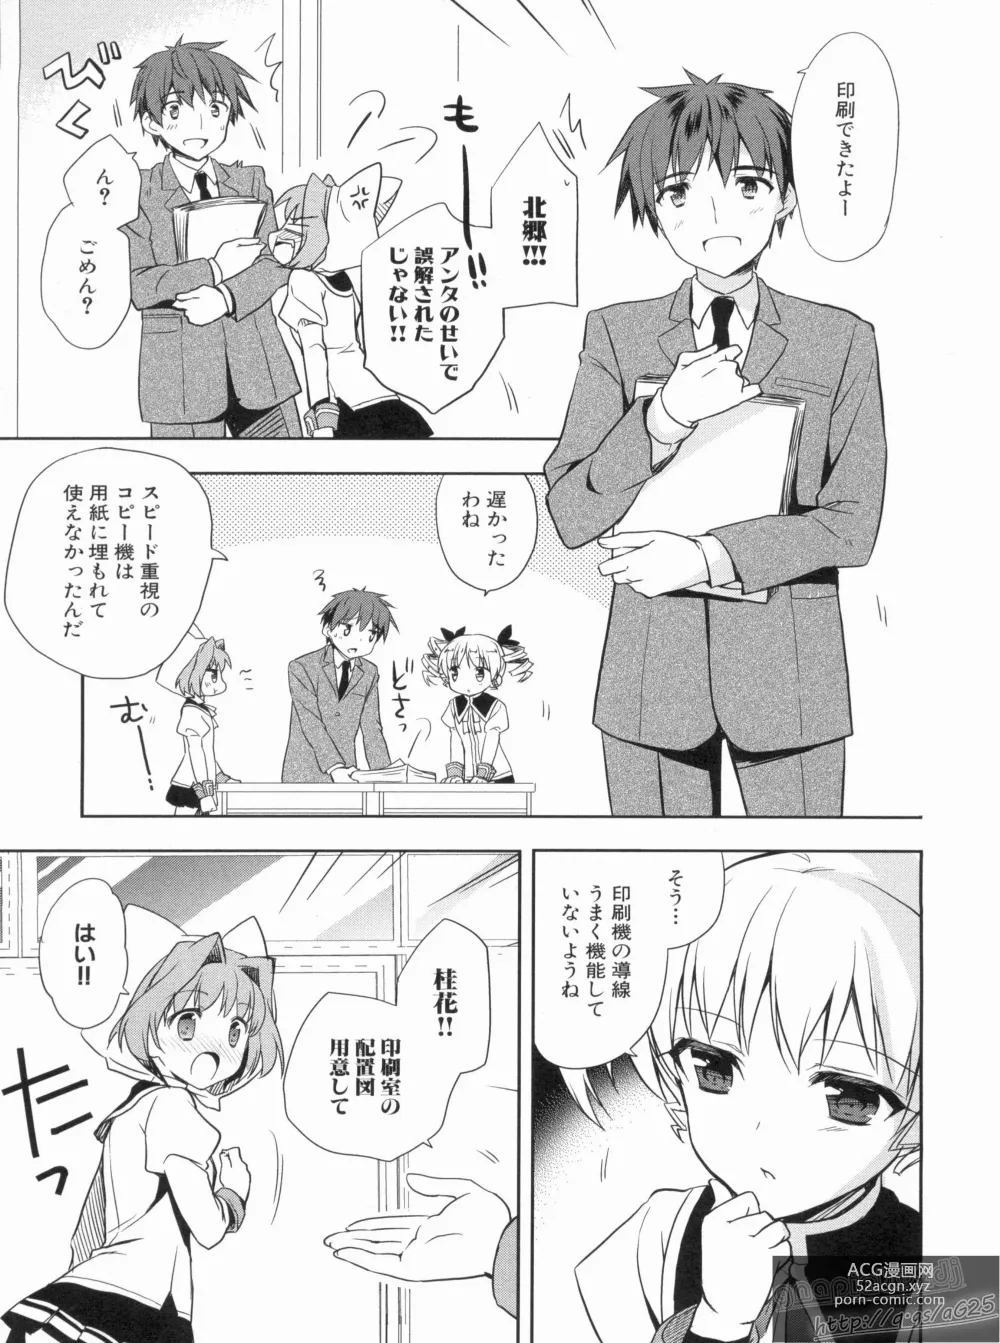 Page 17 of manga Shin Koihime Musou Gaishi Saiten VOL.3